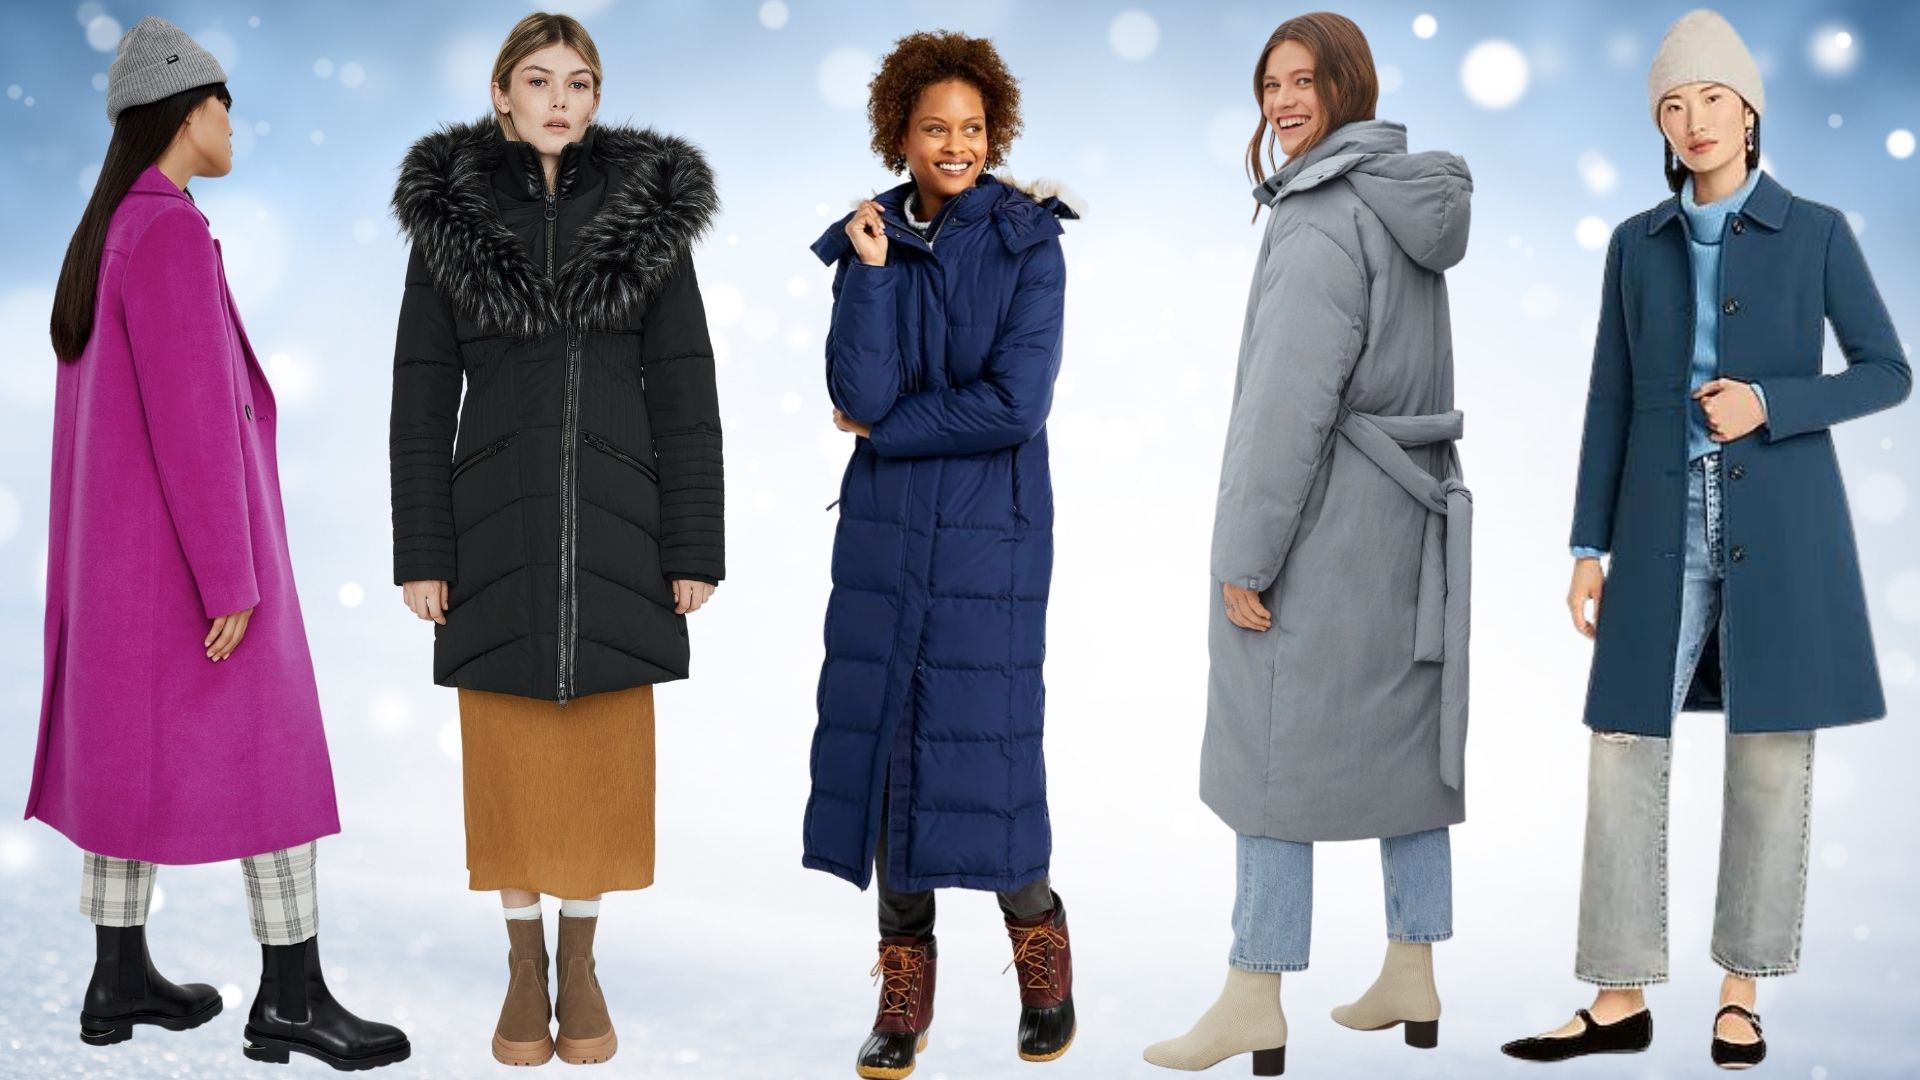 NREALY Womens Lady Womens Warm Long Faux Fur Coat Jacket Parka Outerwear